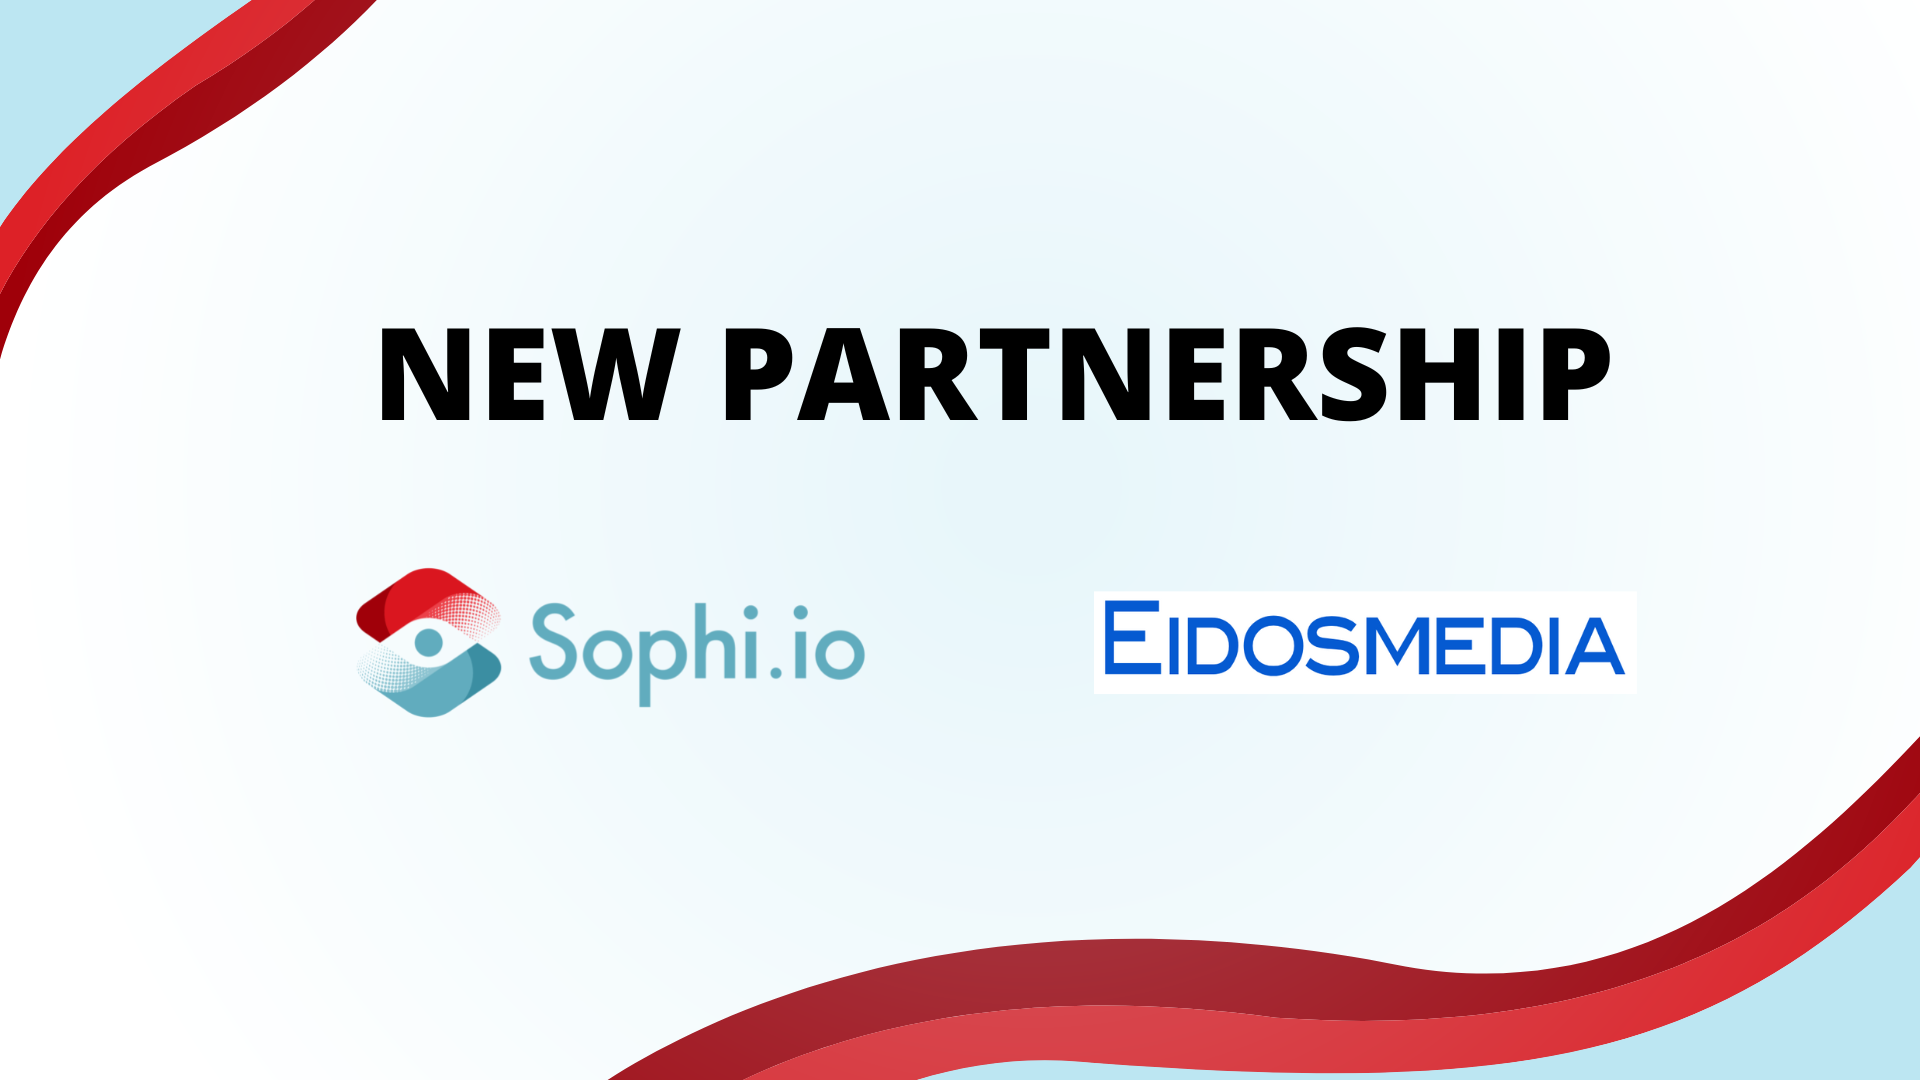 Sophi.io partners with Eidosmedia